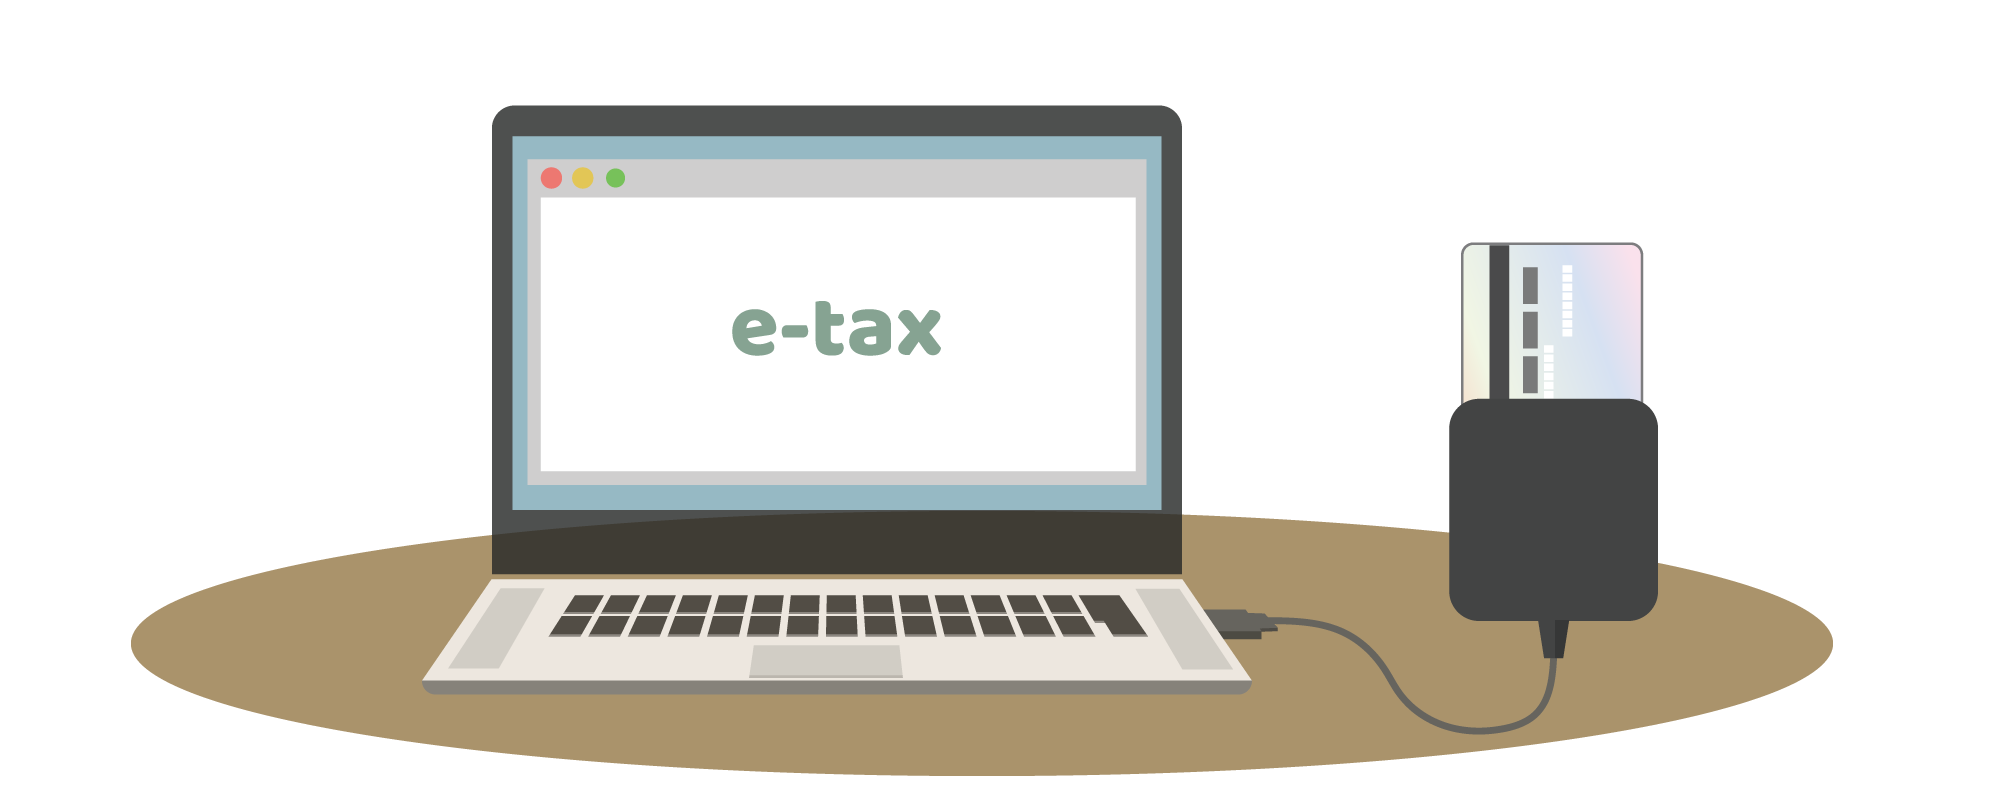 e-Taxに必要な準備